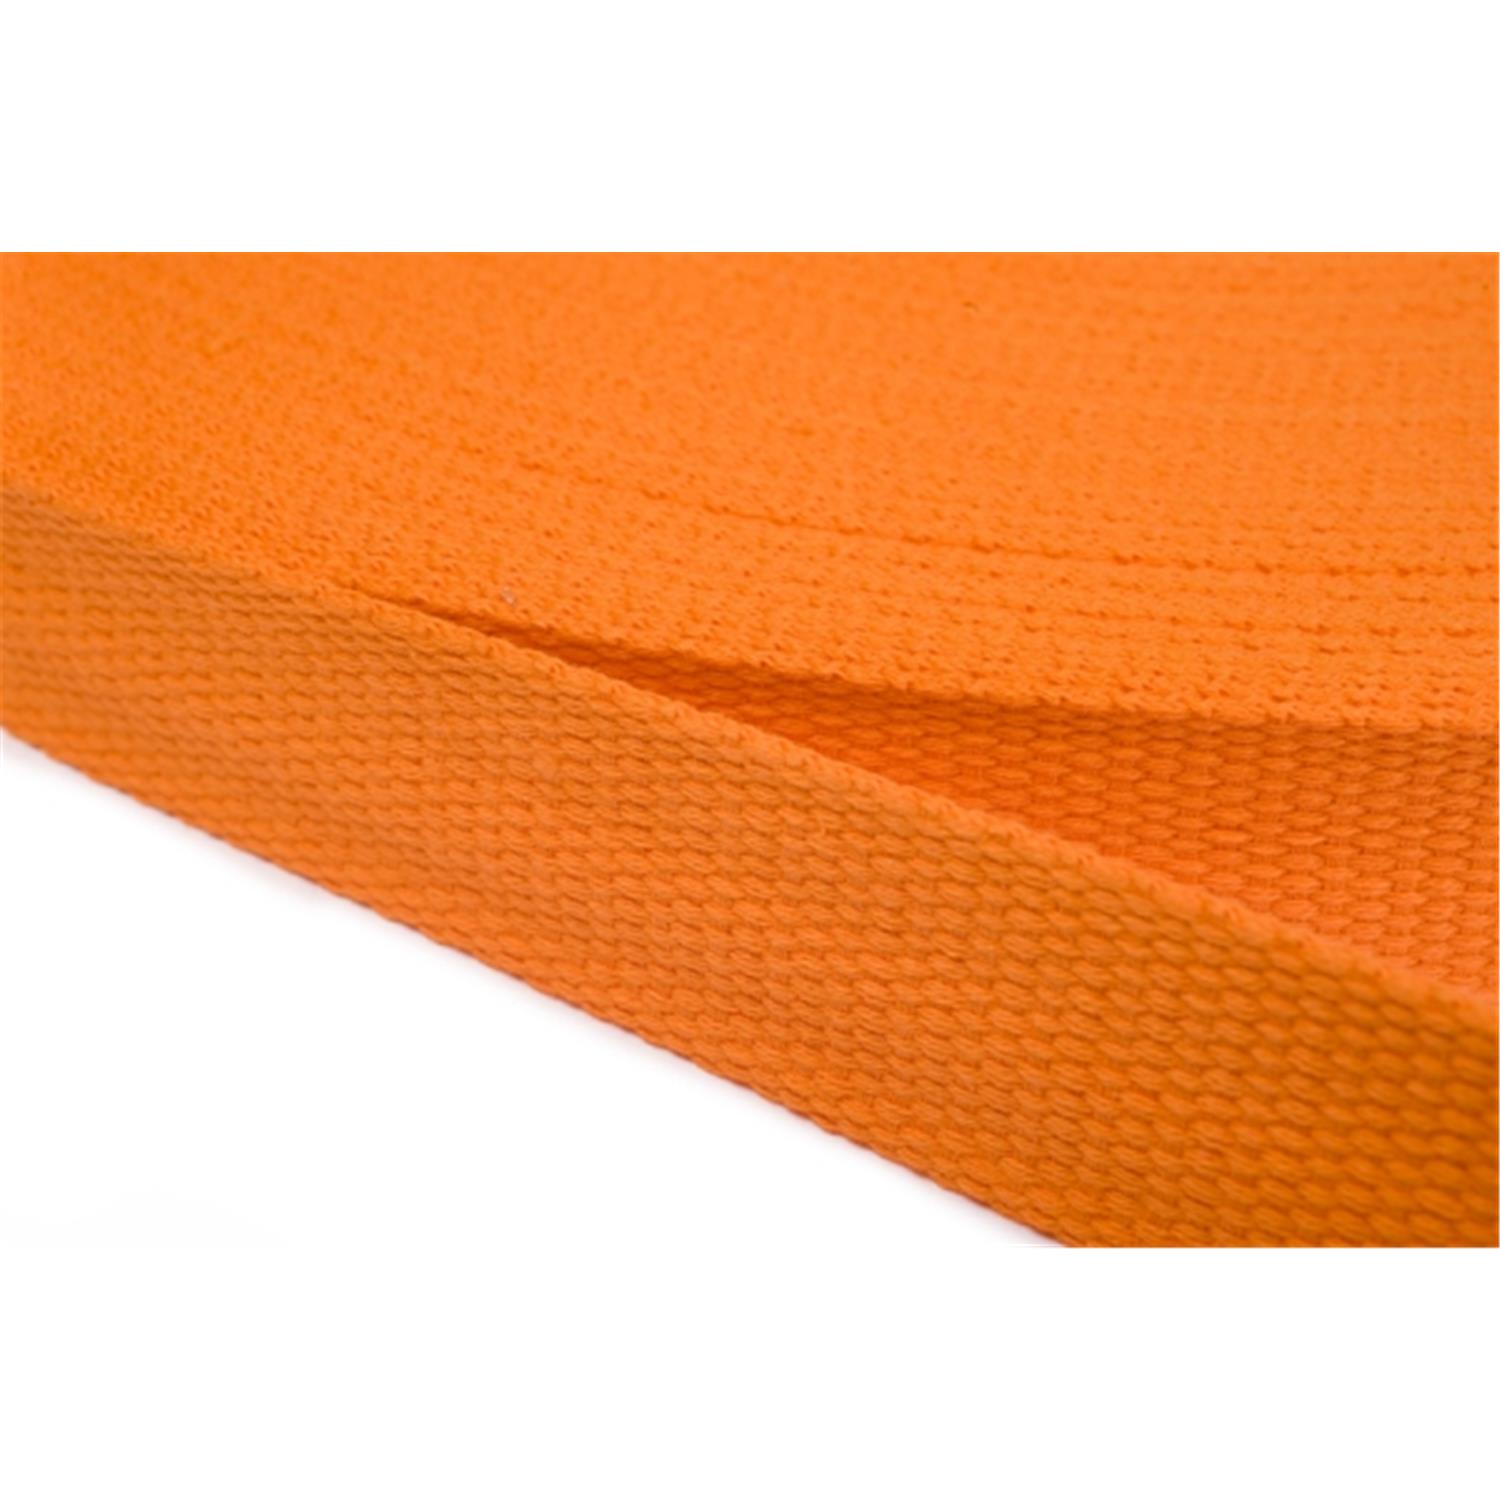 Gurtband aus Baumwolle 20mm in 20 Farben 06 - orange 6 Meter